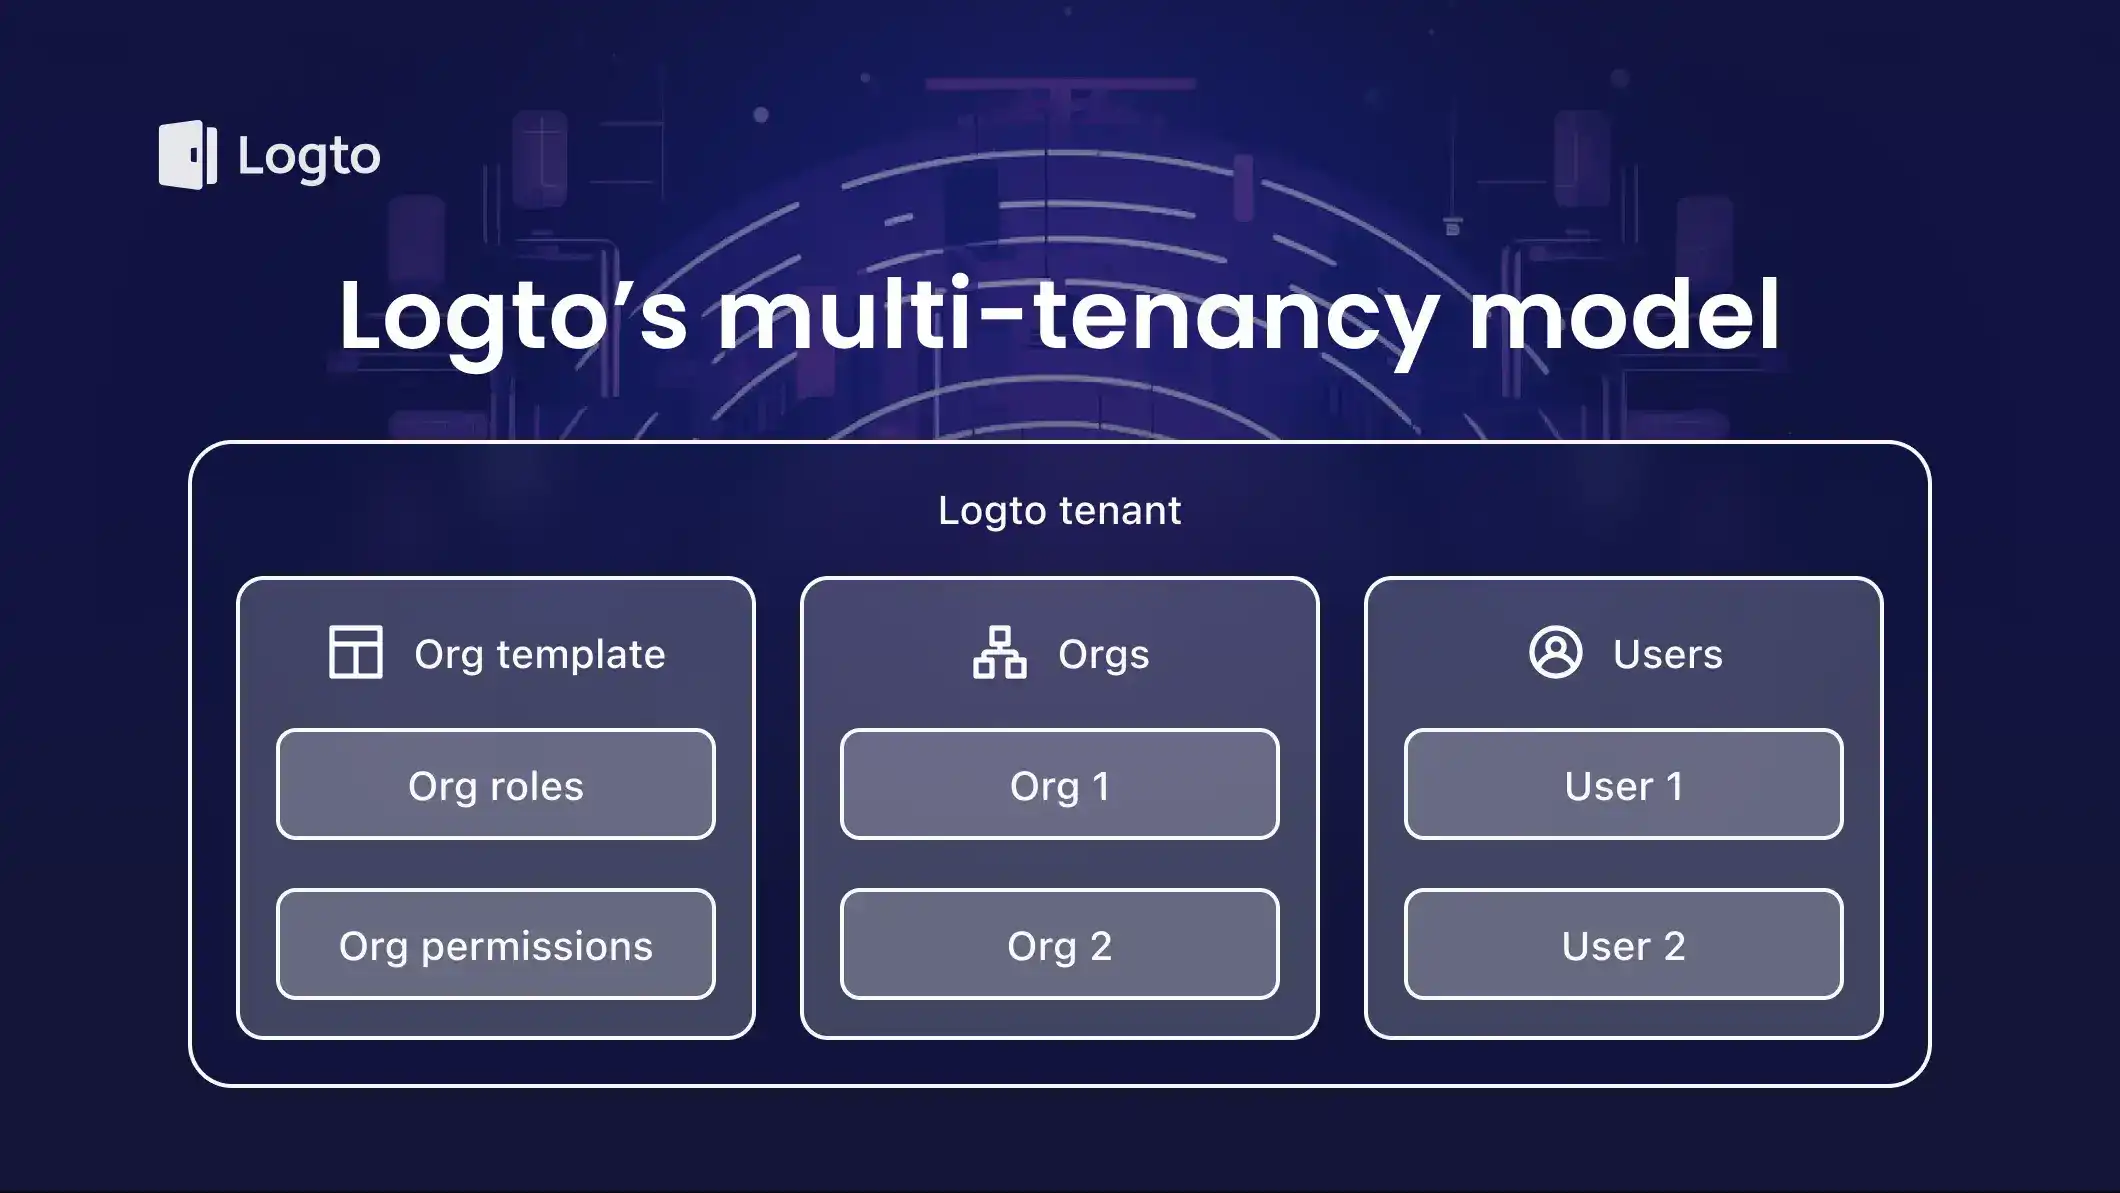 Logto's multi-tenancy model explained